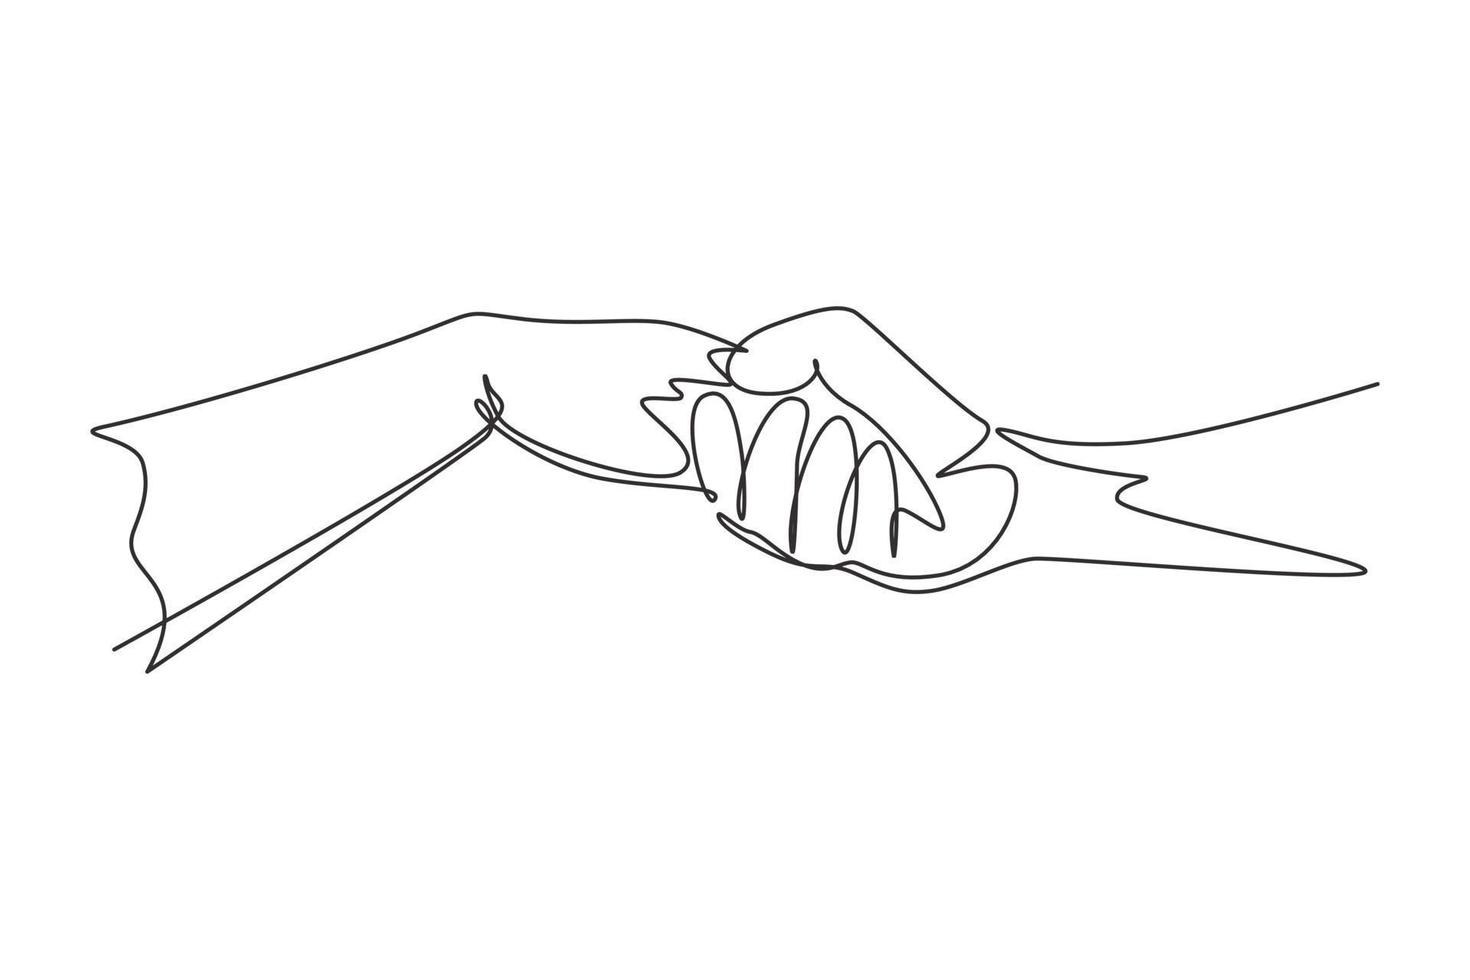 un seul dessin au trait homme et femme tenant leurs mains. signe ou symbole d'amour, de bienveillance, d'amitié. communication avec les gestes de la main. ligne continue moderne dessiner illustration vectorielle graphique vecteur